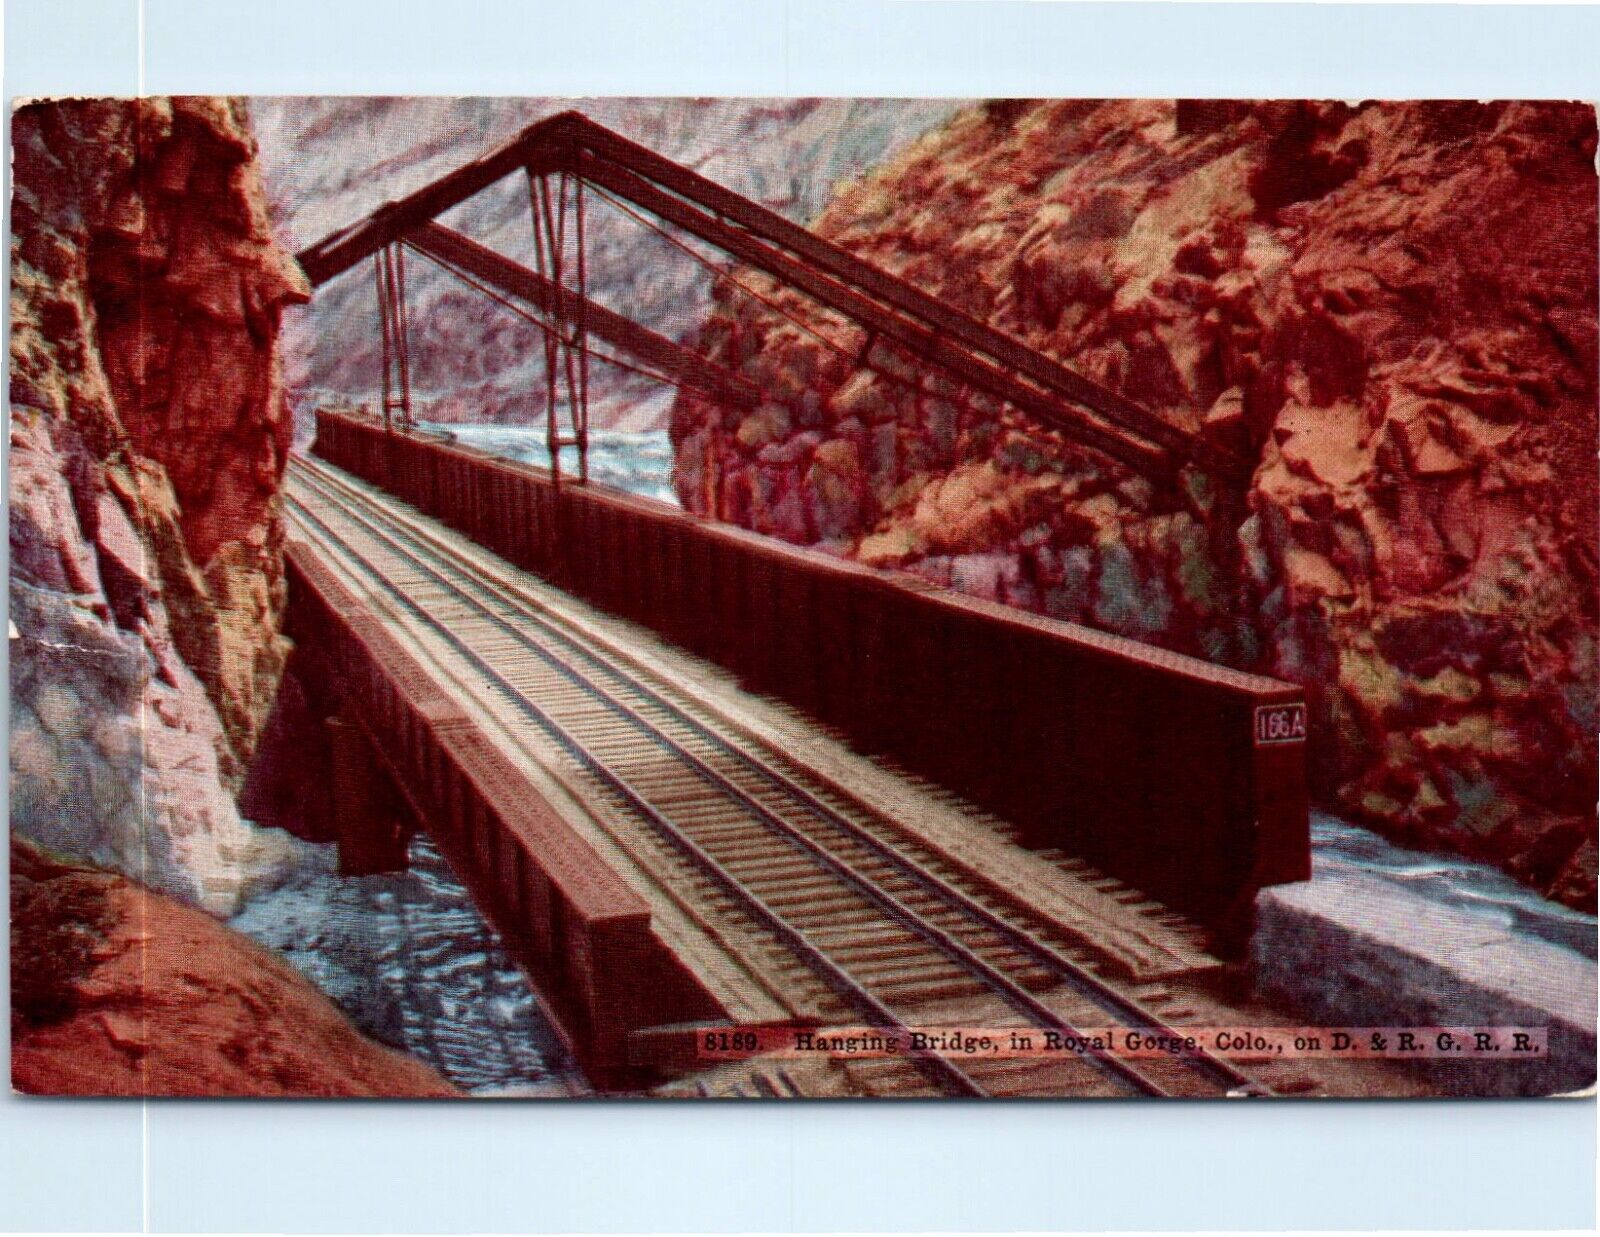 Vintage 1912 Postcard Hanging Bridge in Royal Gorge, Colorado